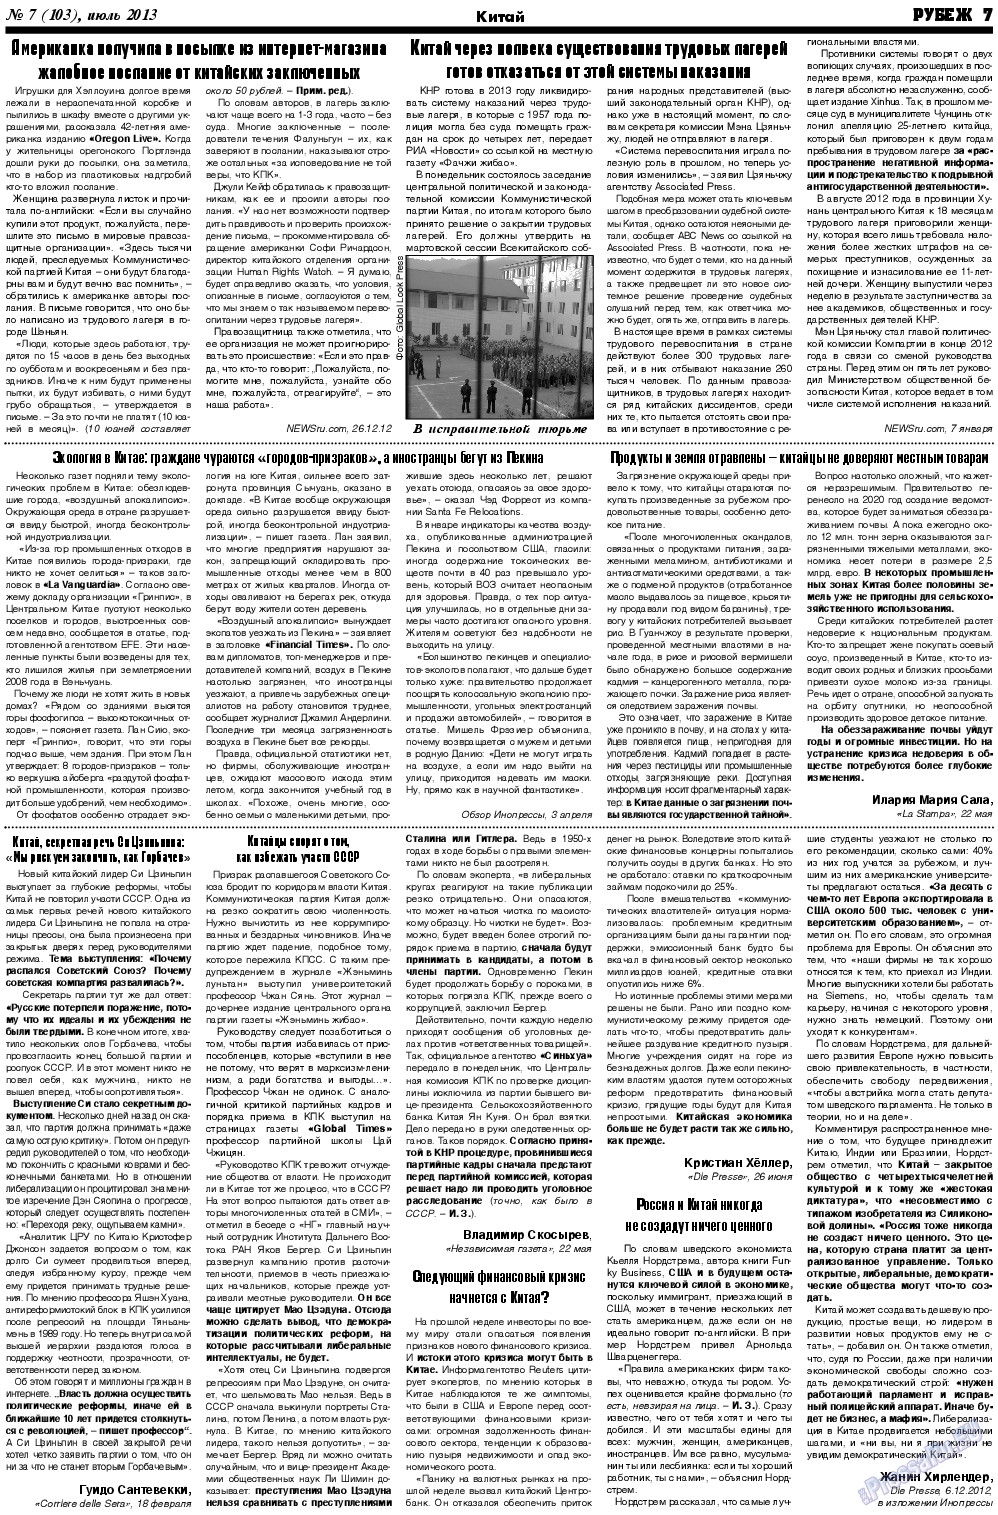 Рубеж (газета). 2013 год, номер 7, стр. 7